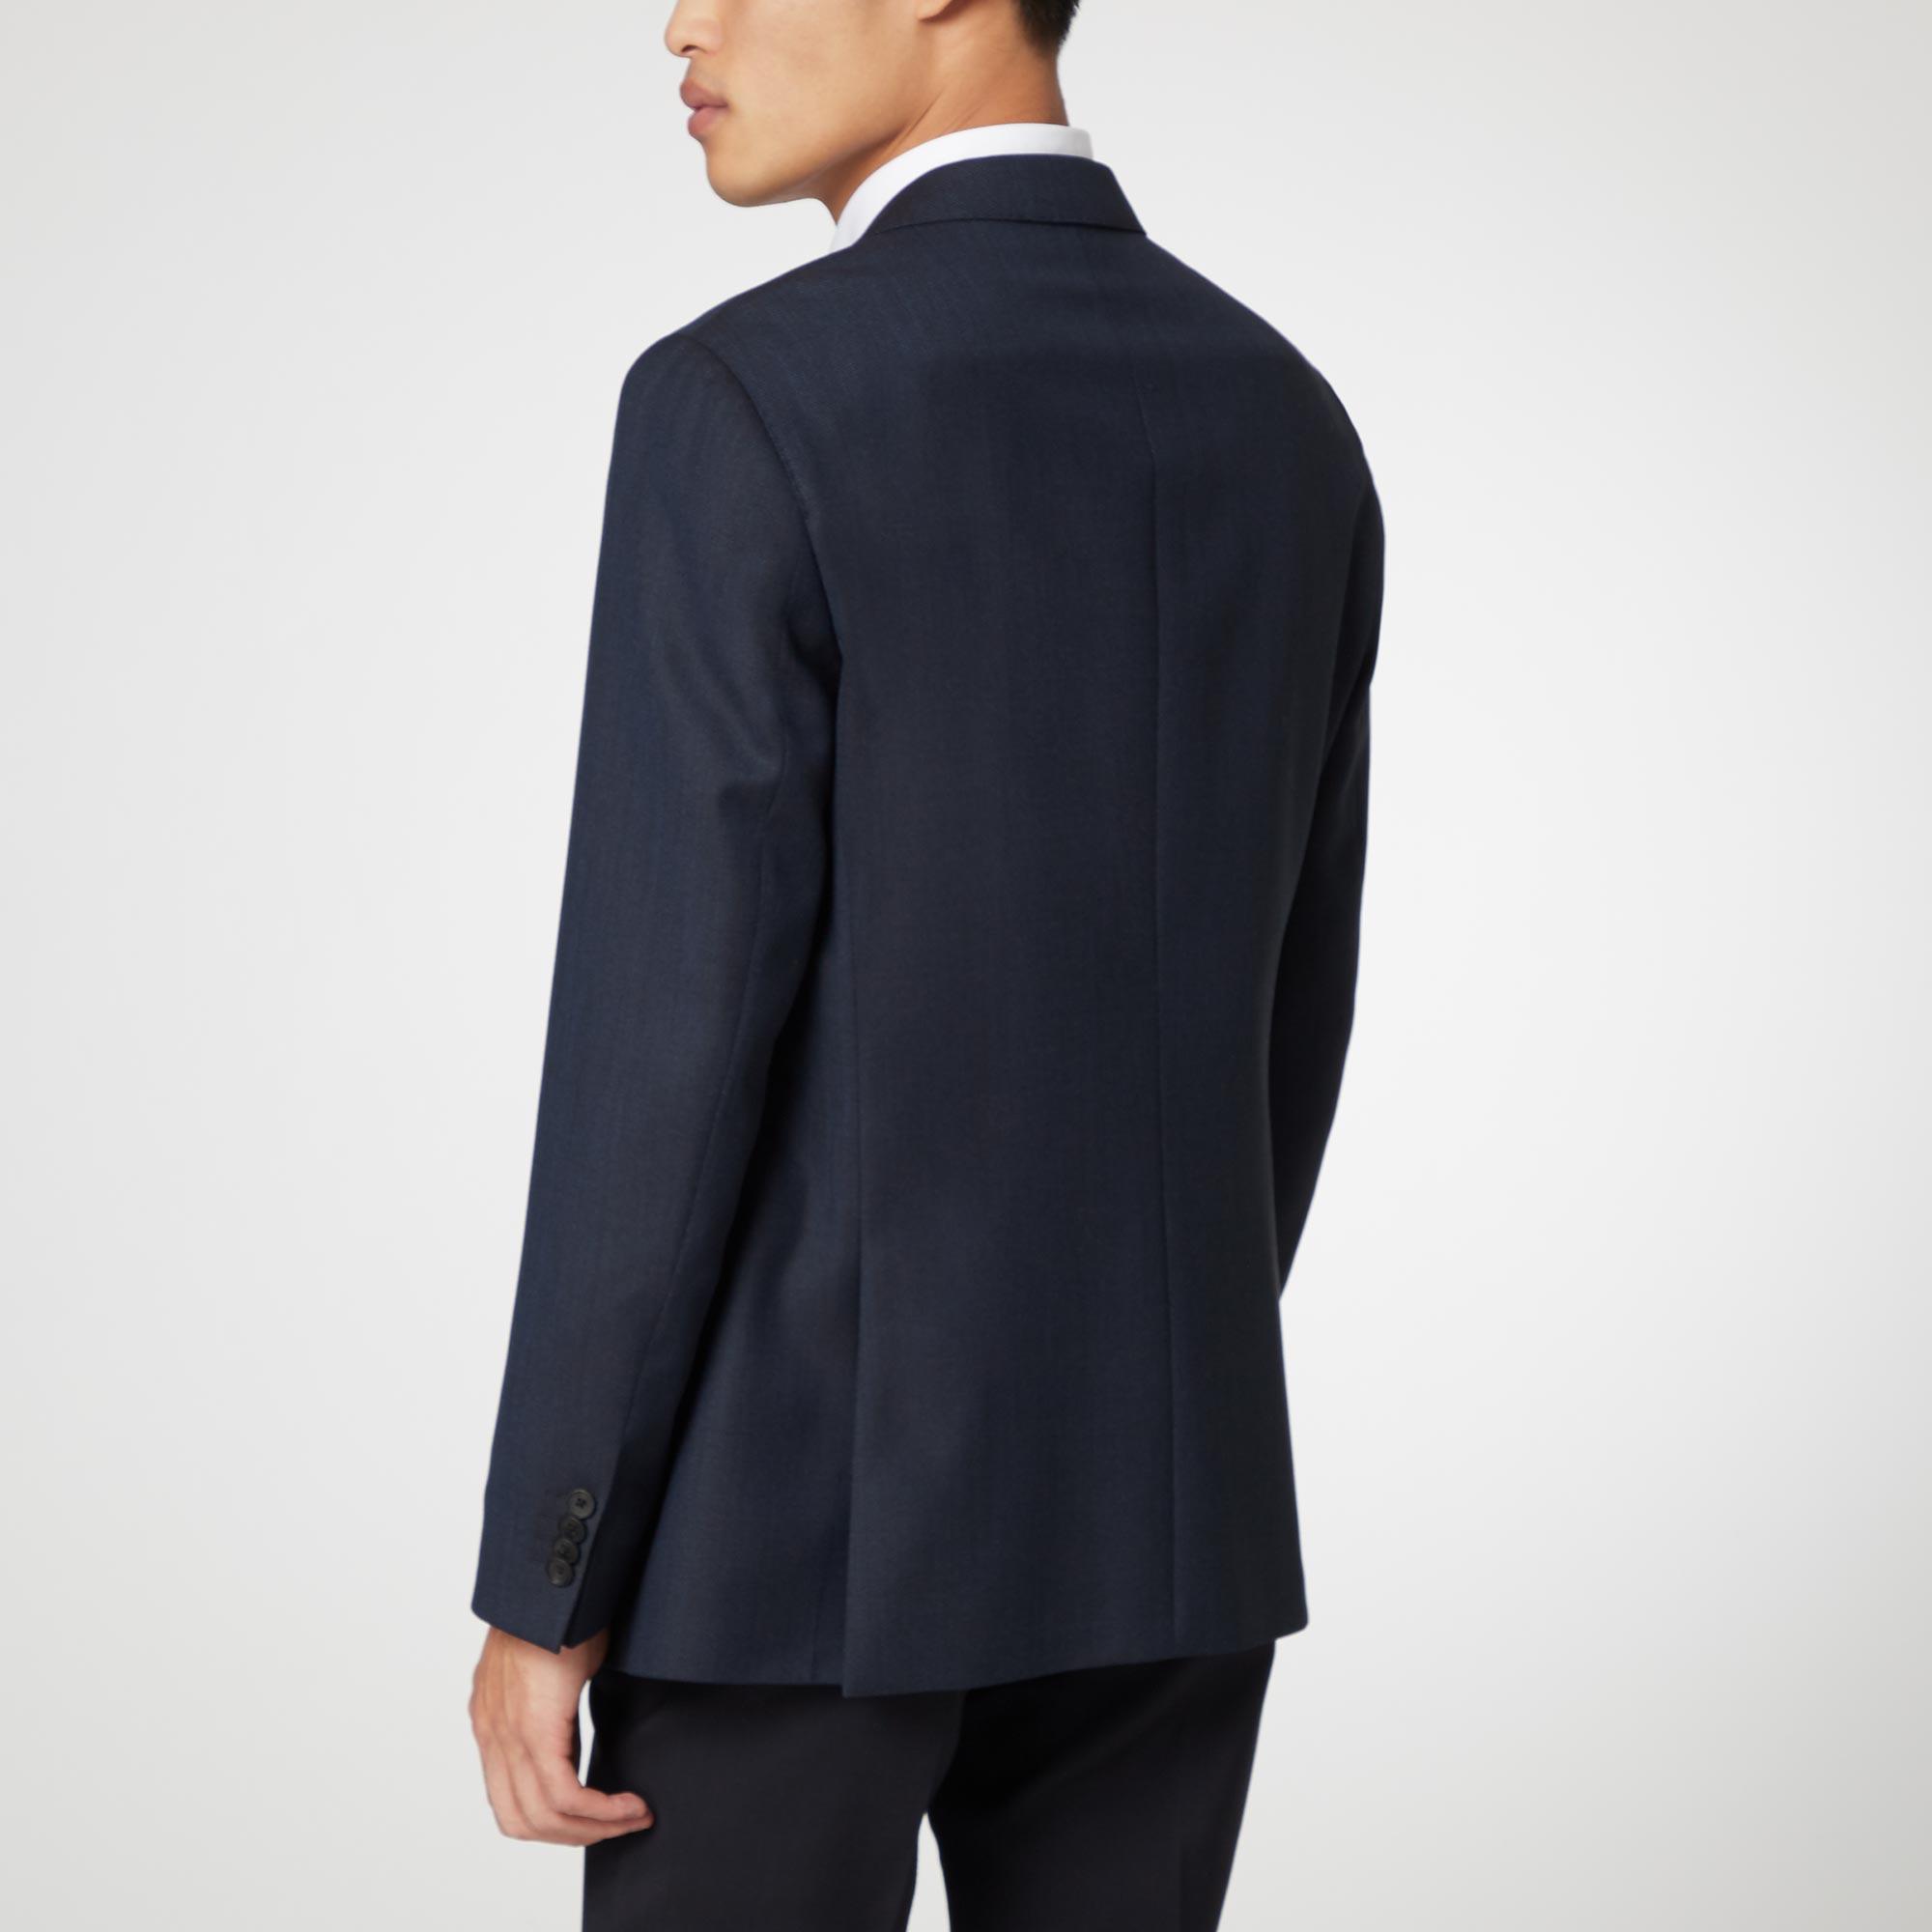 Novan Textured Suit Jacket